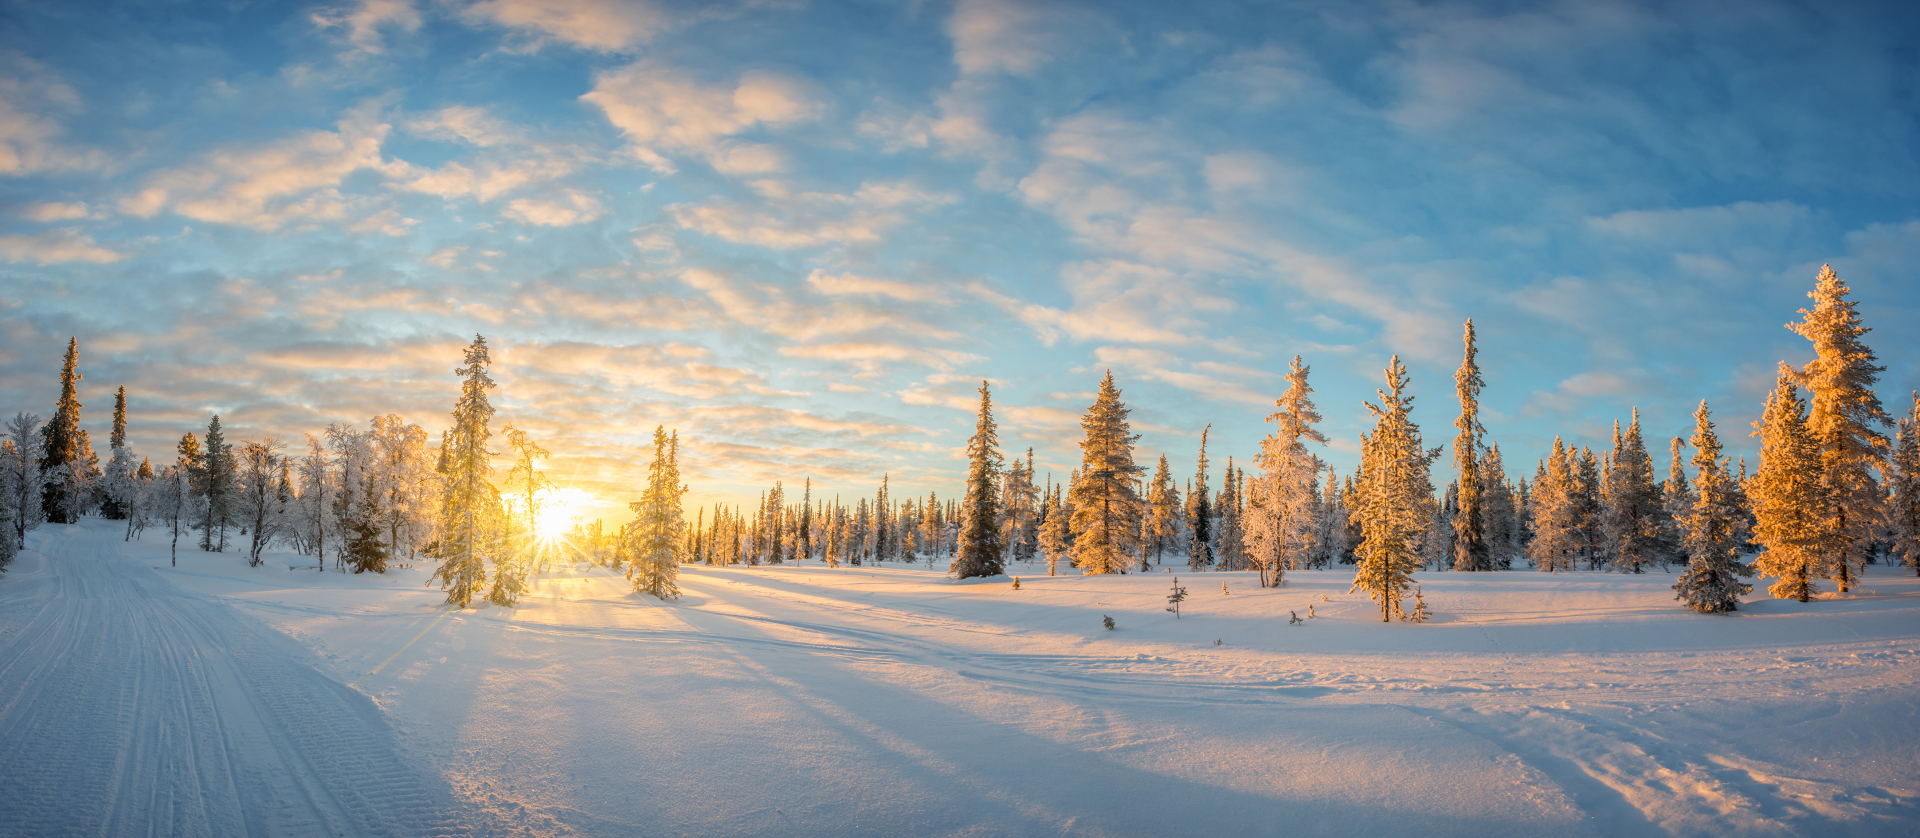 Finnland - Winterwunderland im hohen Norden